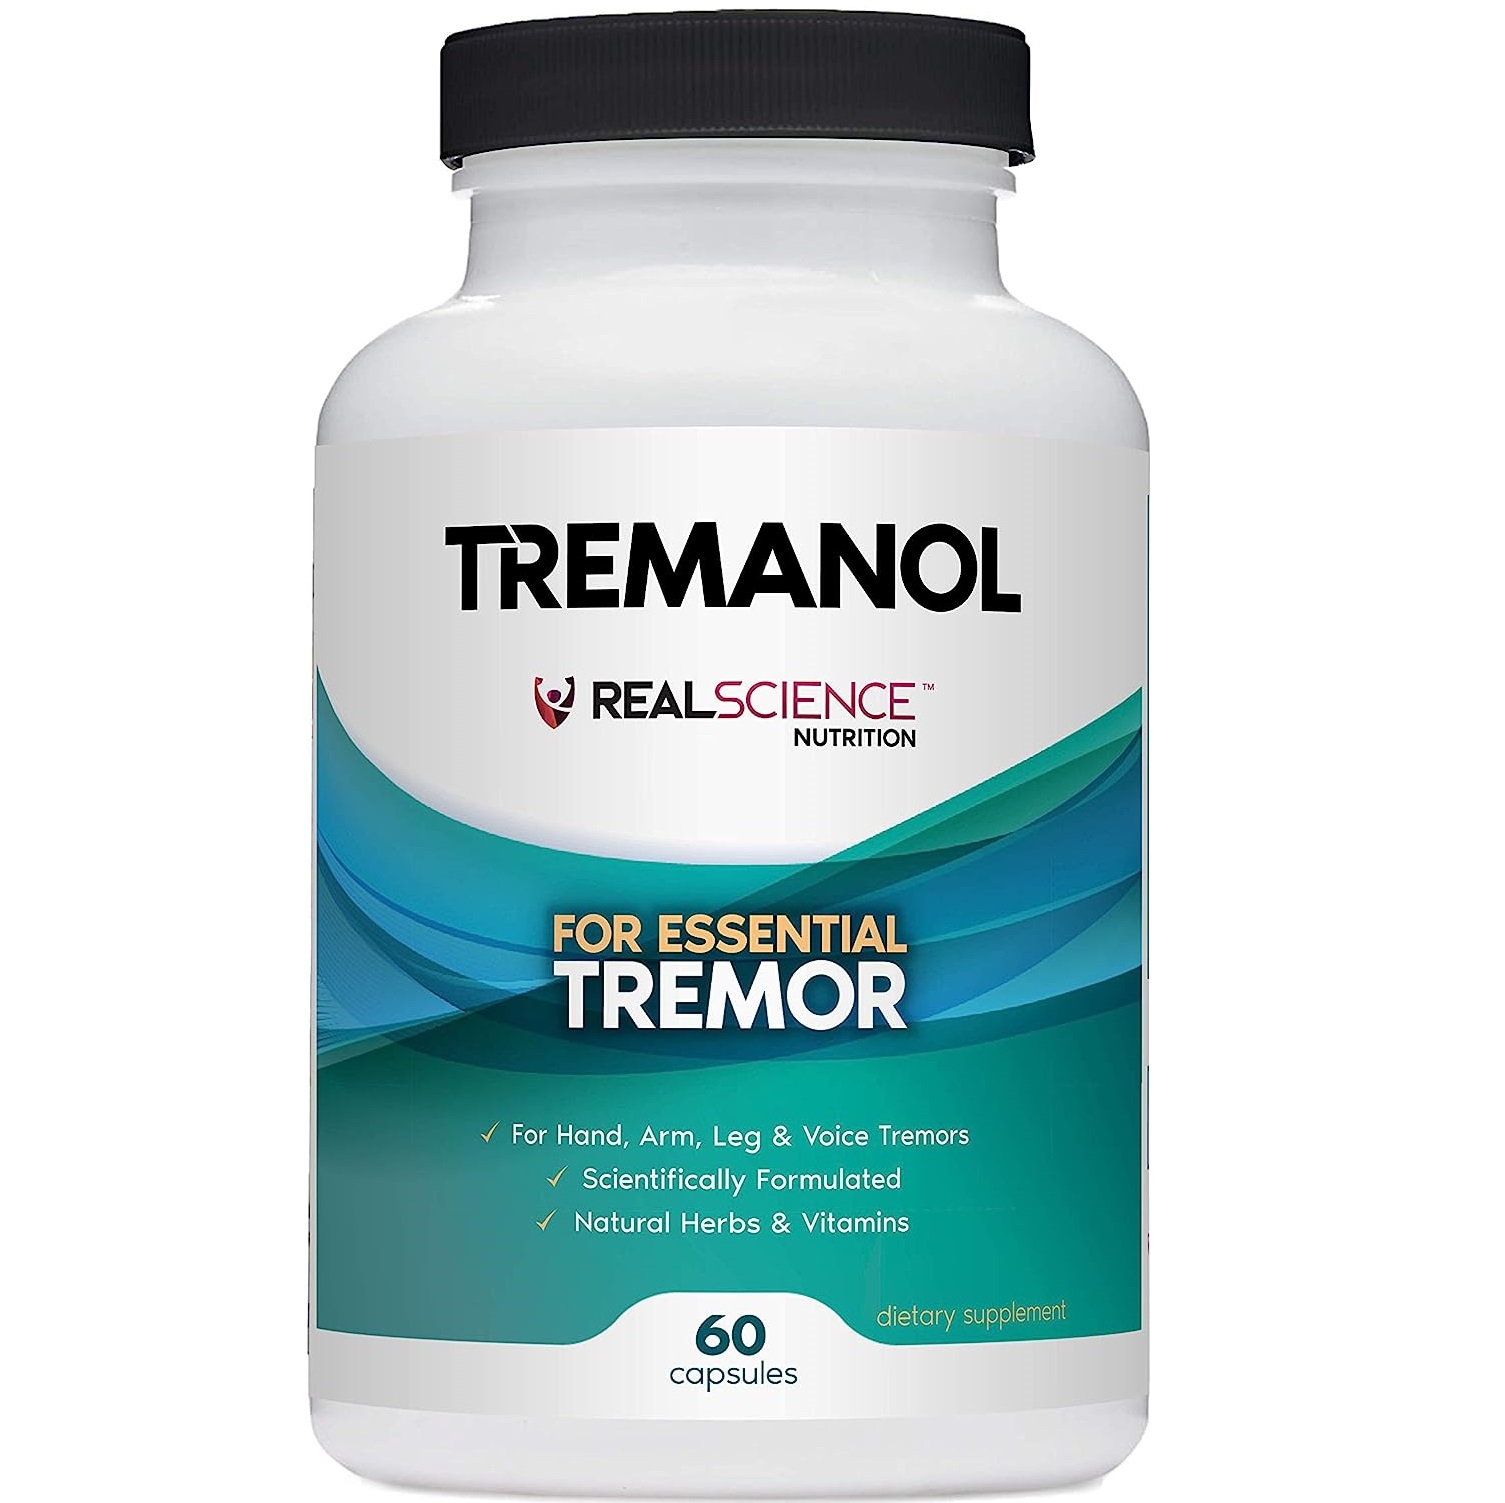 Real-Science-Nutrition-Tremanol